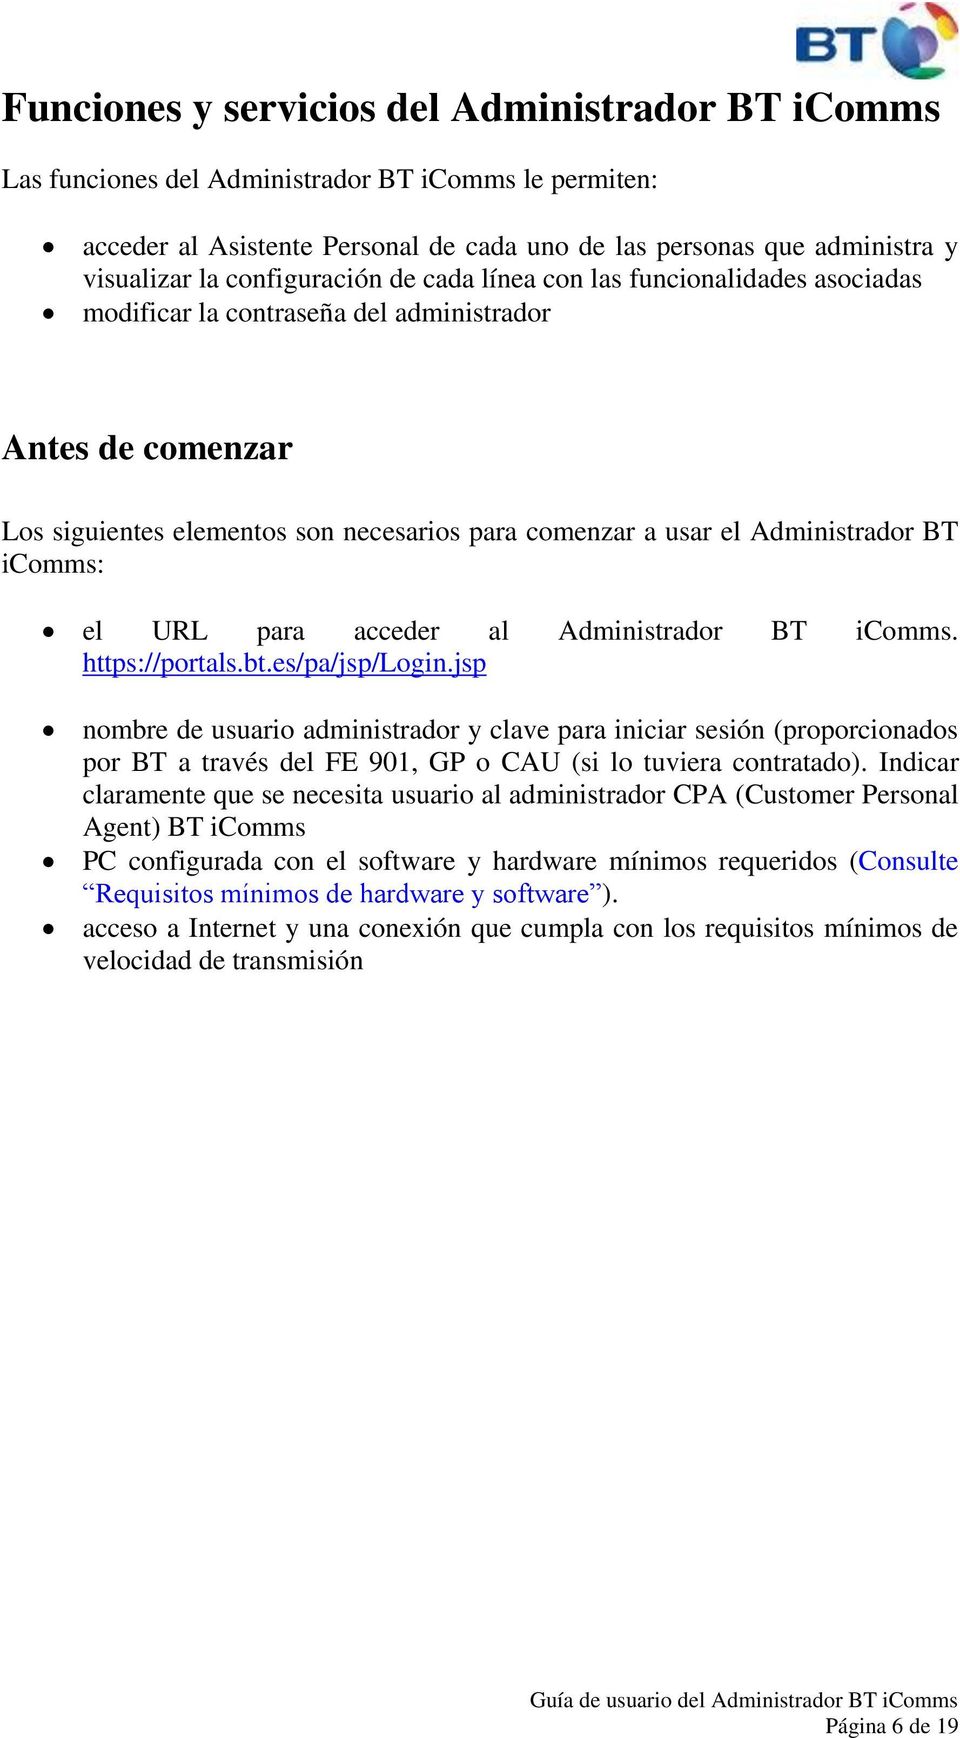 BT icomms: el URL para acceder al Administrador BT icomms. https://portals.bt.es/pa/jsp/login.